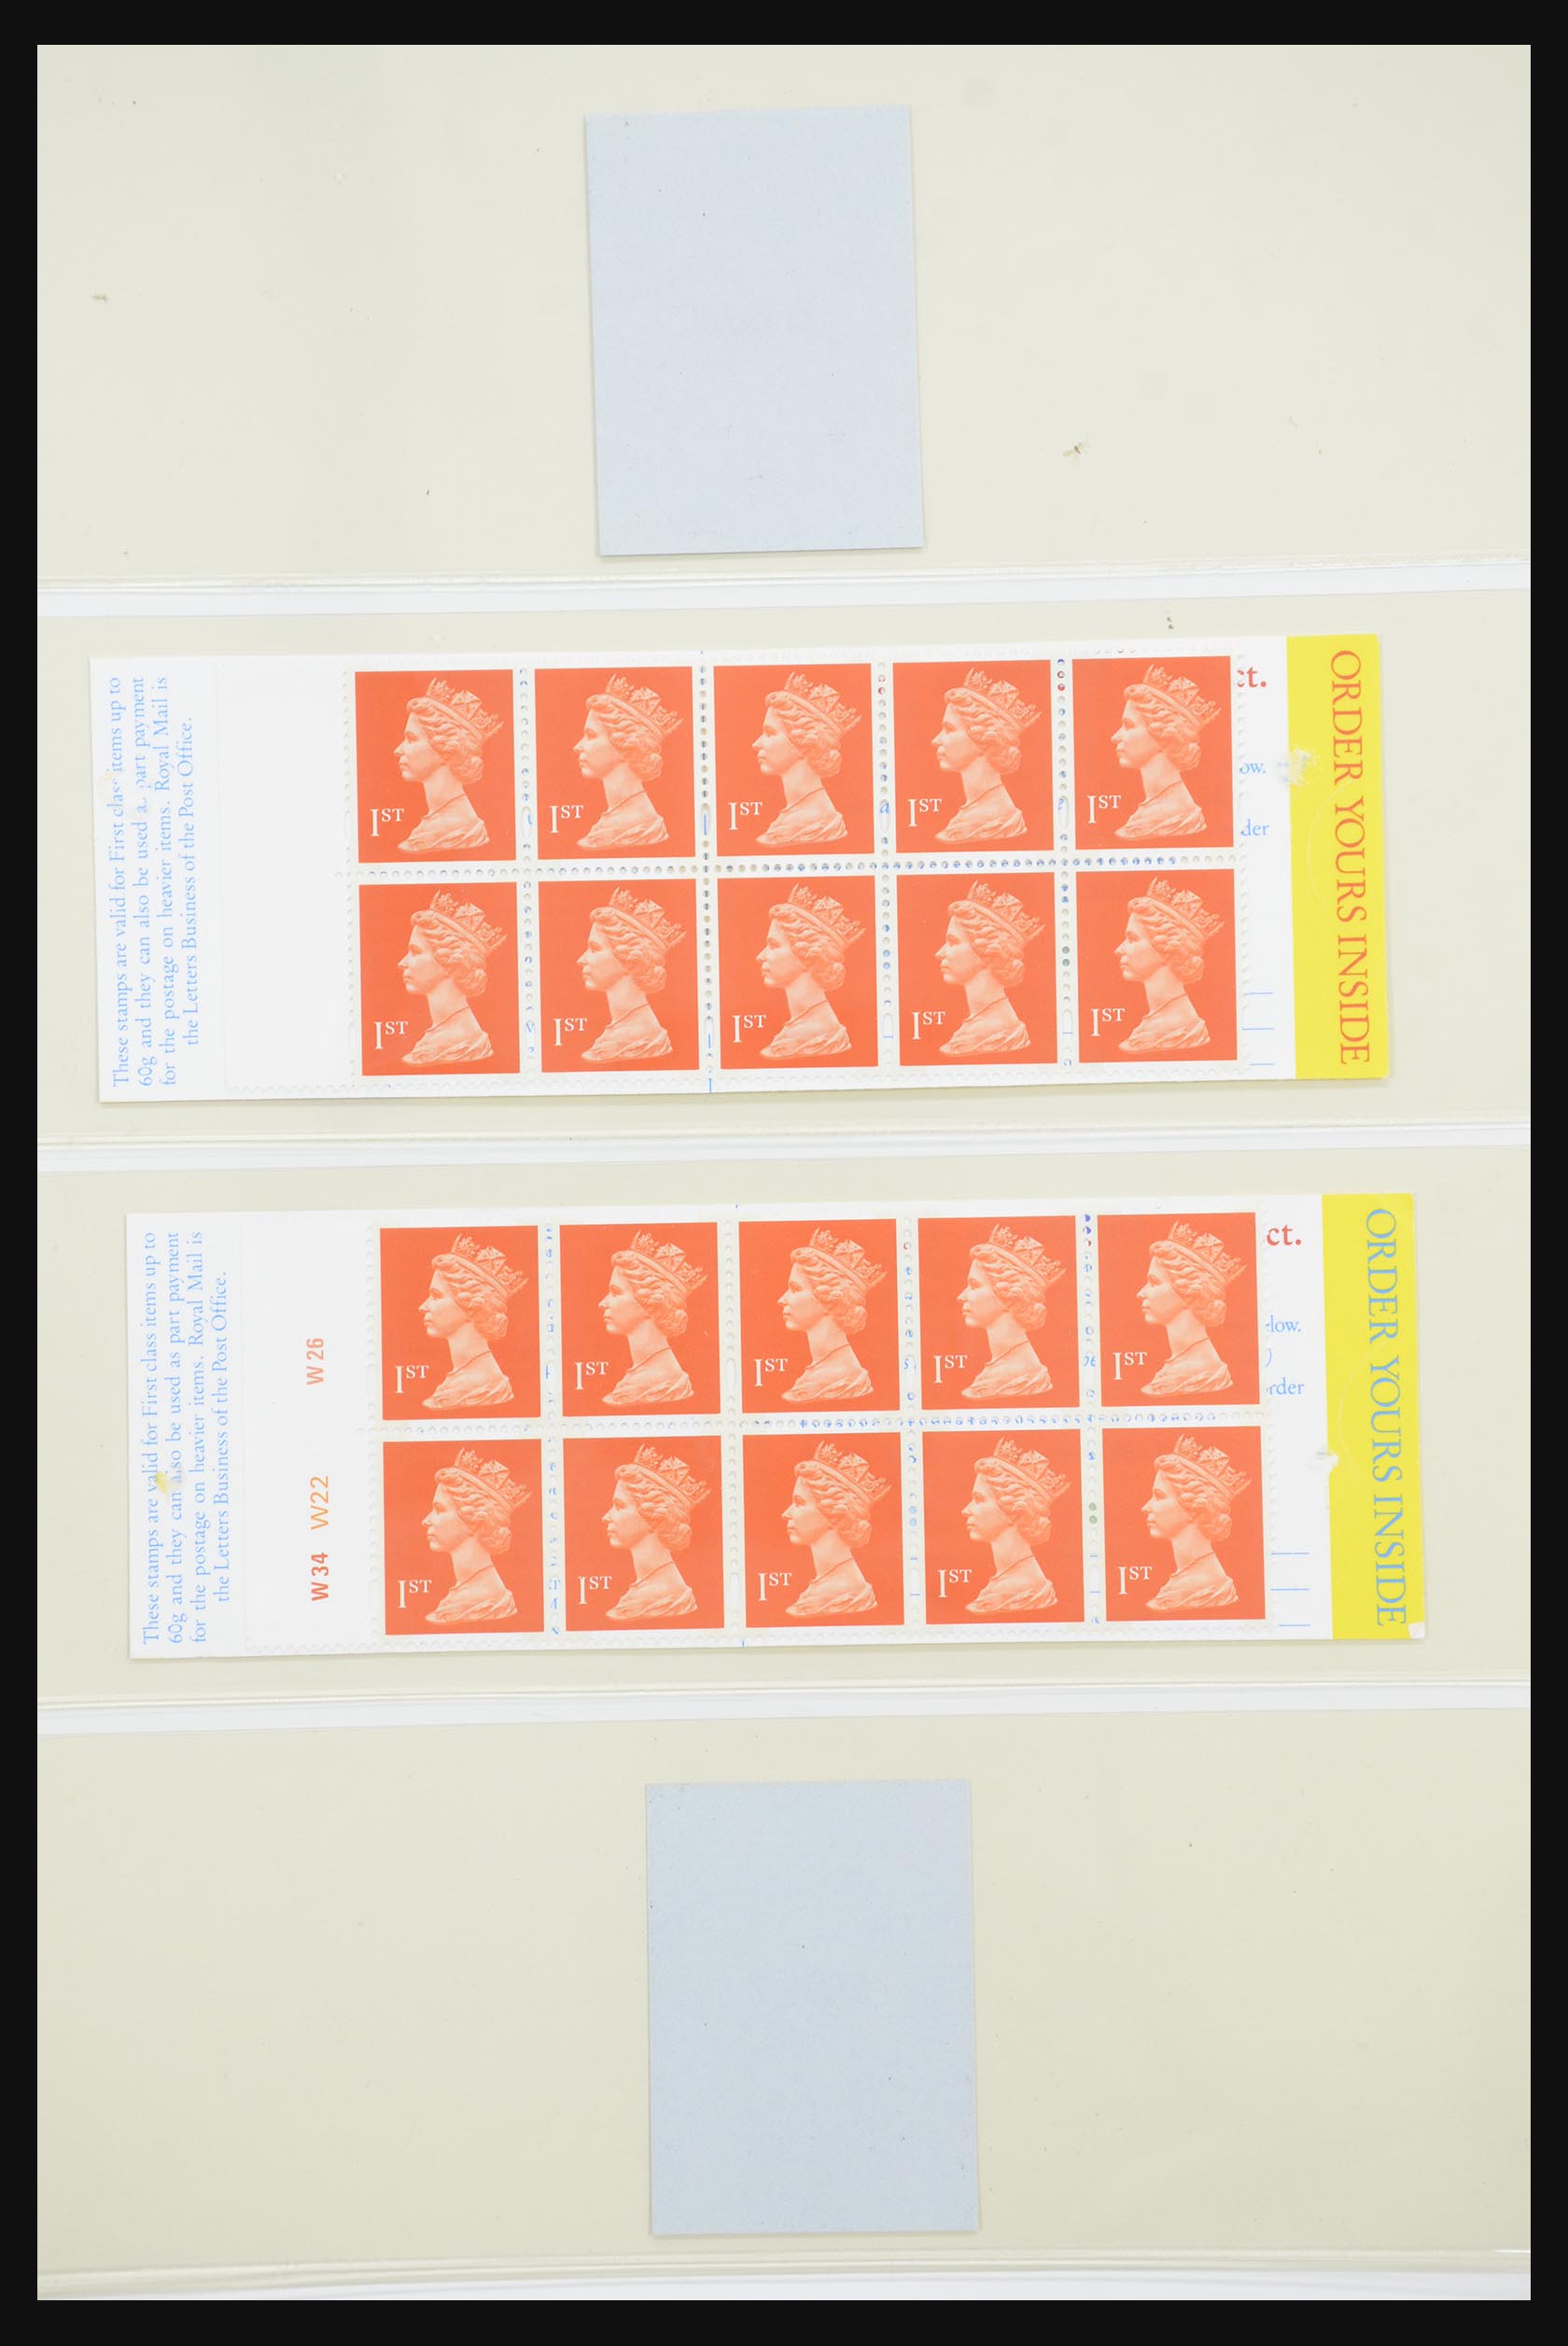 31960 126 - 31960 Engeland postzegelboekjes 1989-2000.